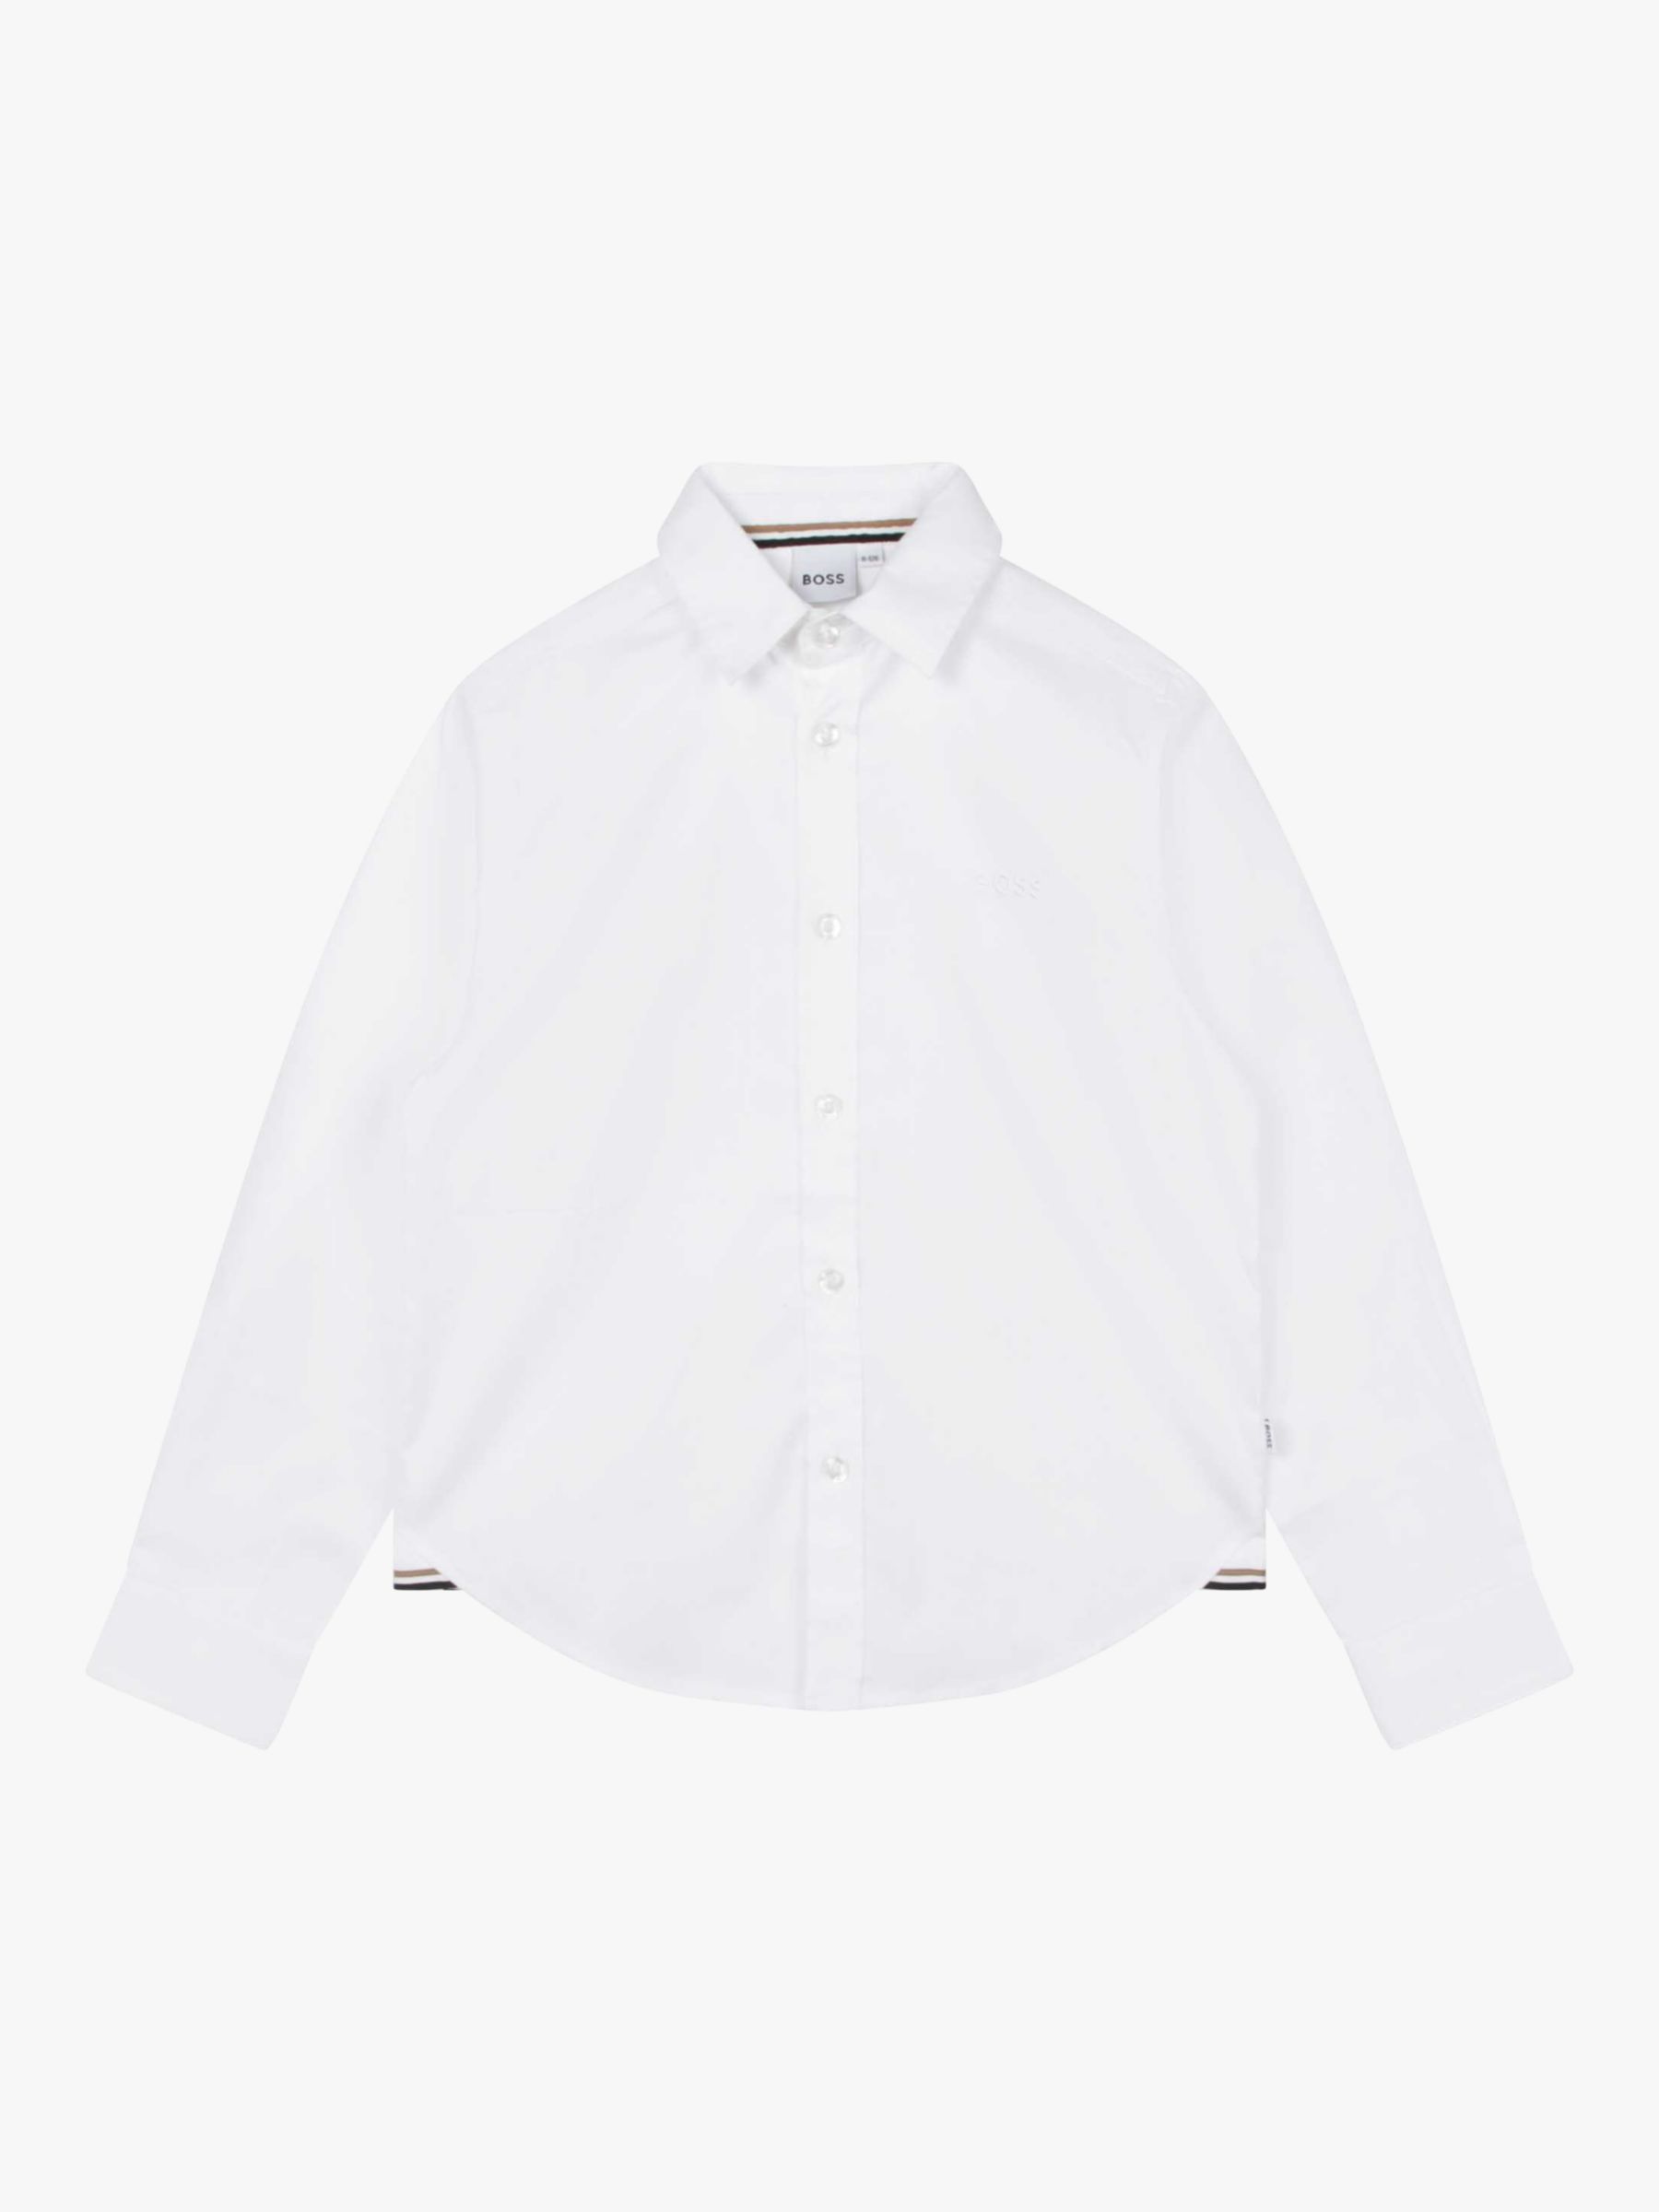 Детская оксфордская рубашка BOSS с длинным рукавом HUGO BOSS, белый рубашка из ткани оксфорд с вышитым логотипом l разноцветный